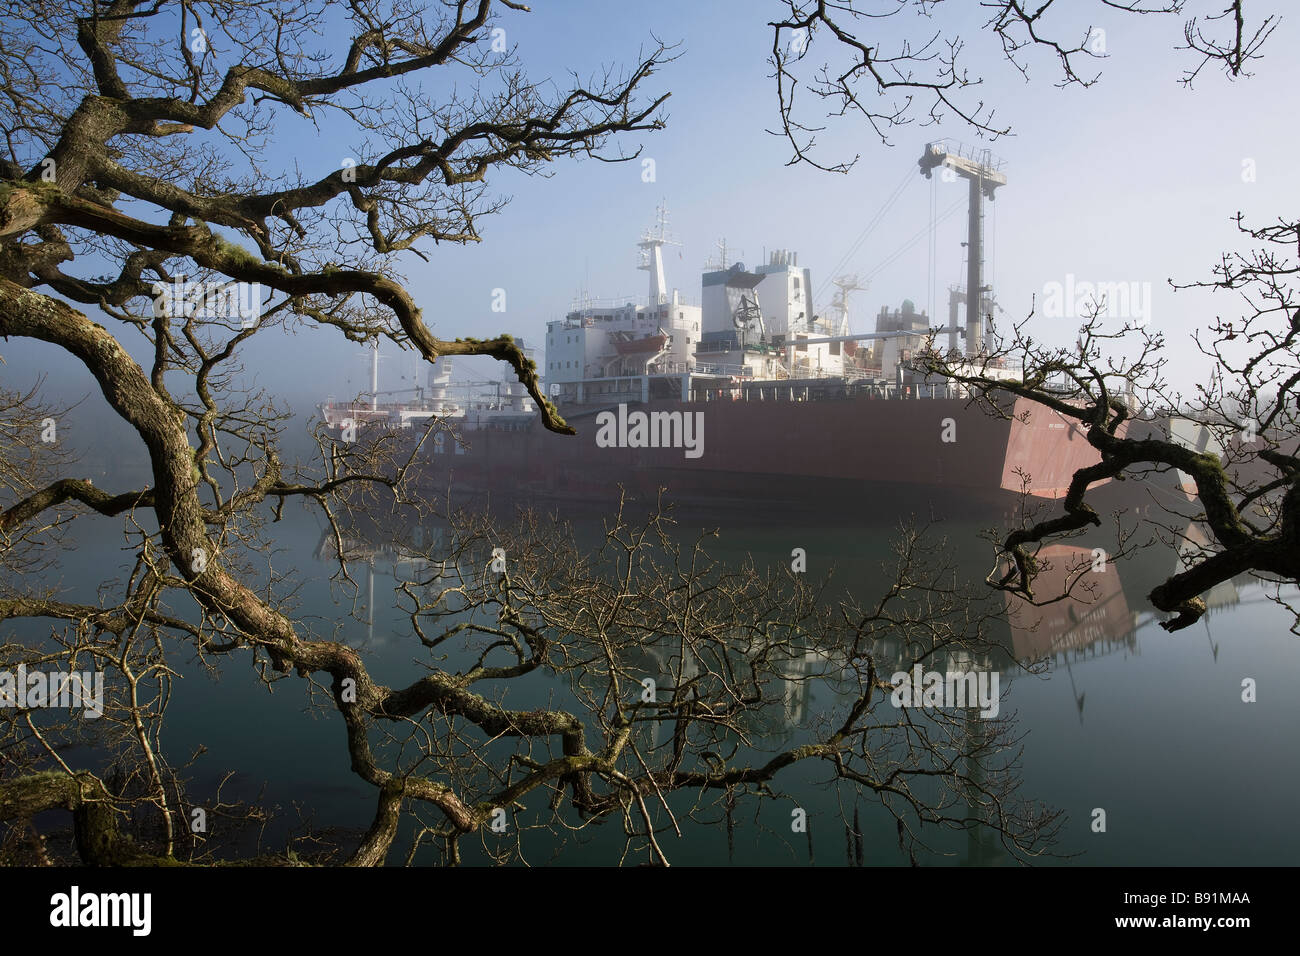 Schiff aufgelegt am Fluss Fal in Cornwall während des globalen wirtschaftlichen Abschwungs im Nebel Stockfoto